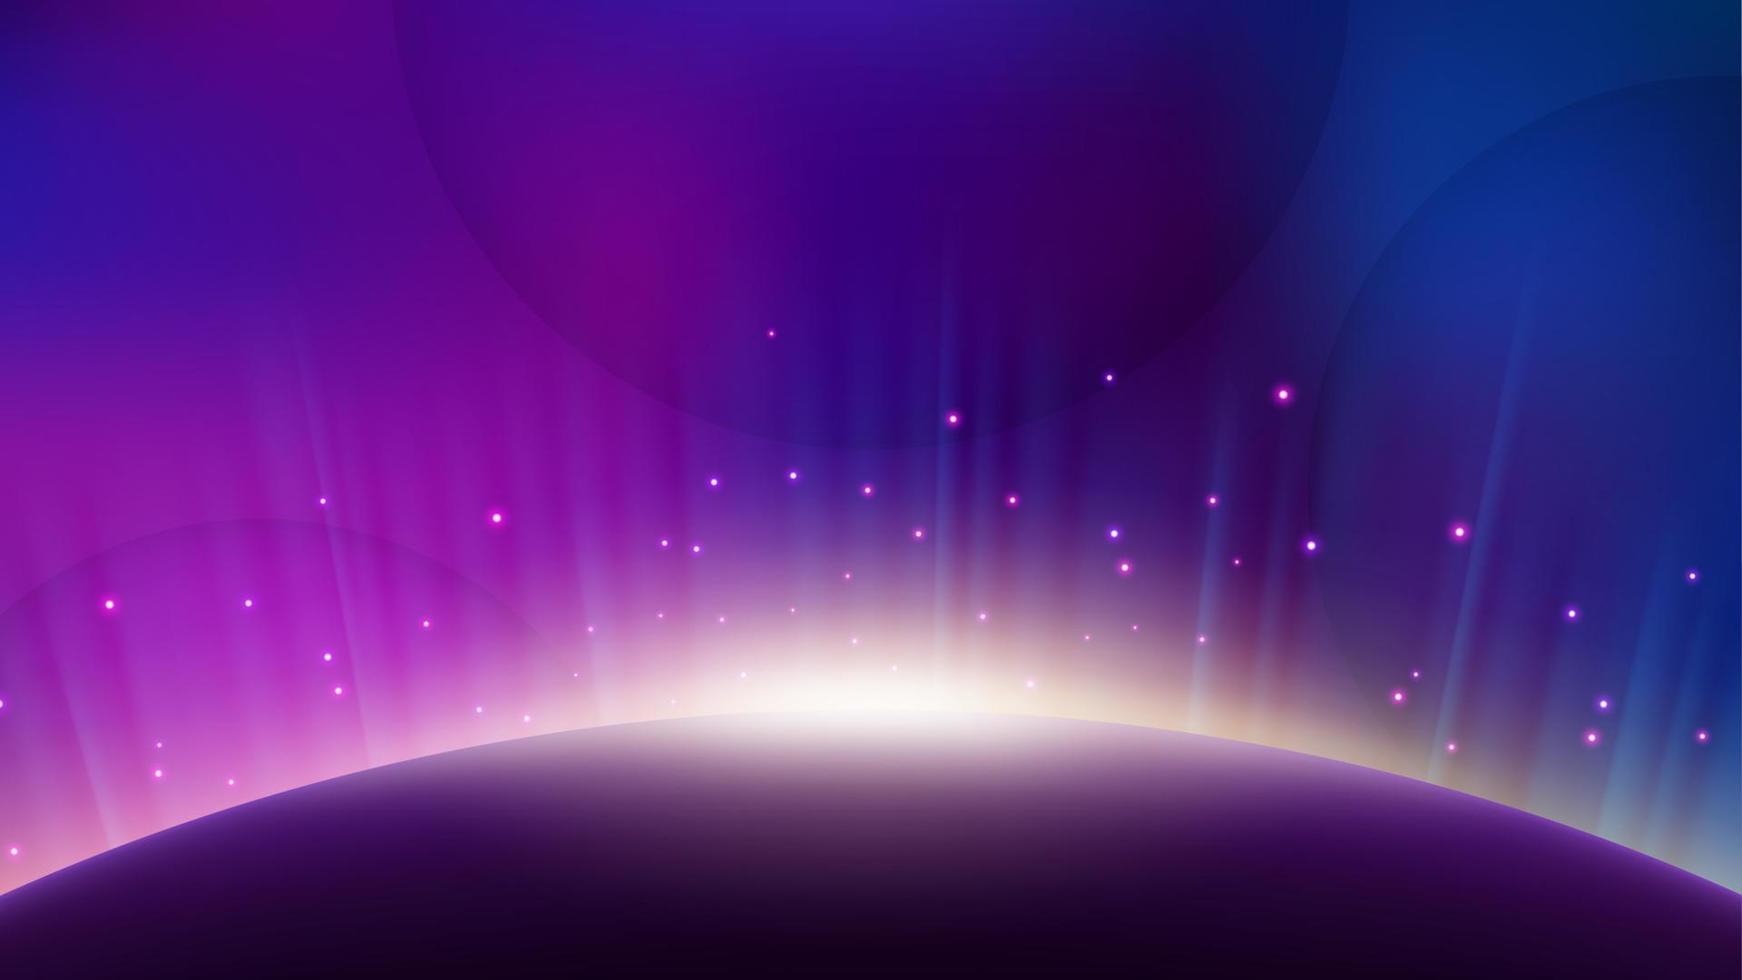 aurora violeta subindo do horizonte do planeta, fundo de brilho brilhante. ilustração vetorial widescreen vetor